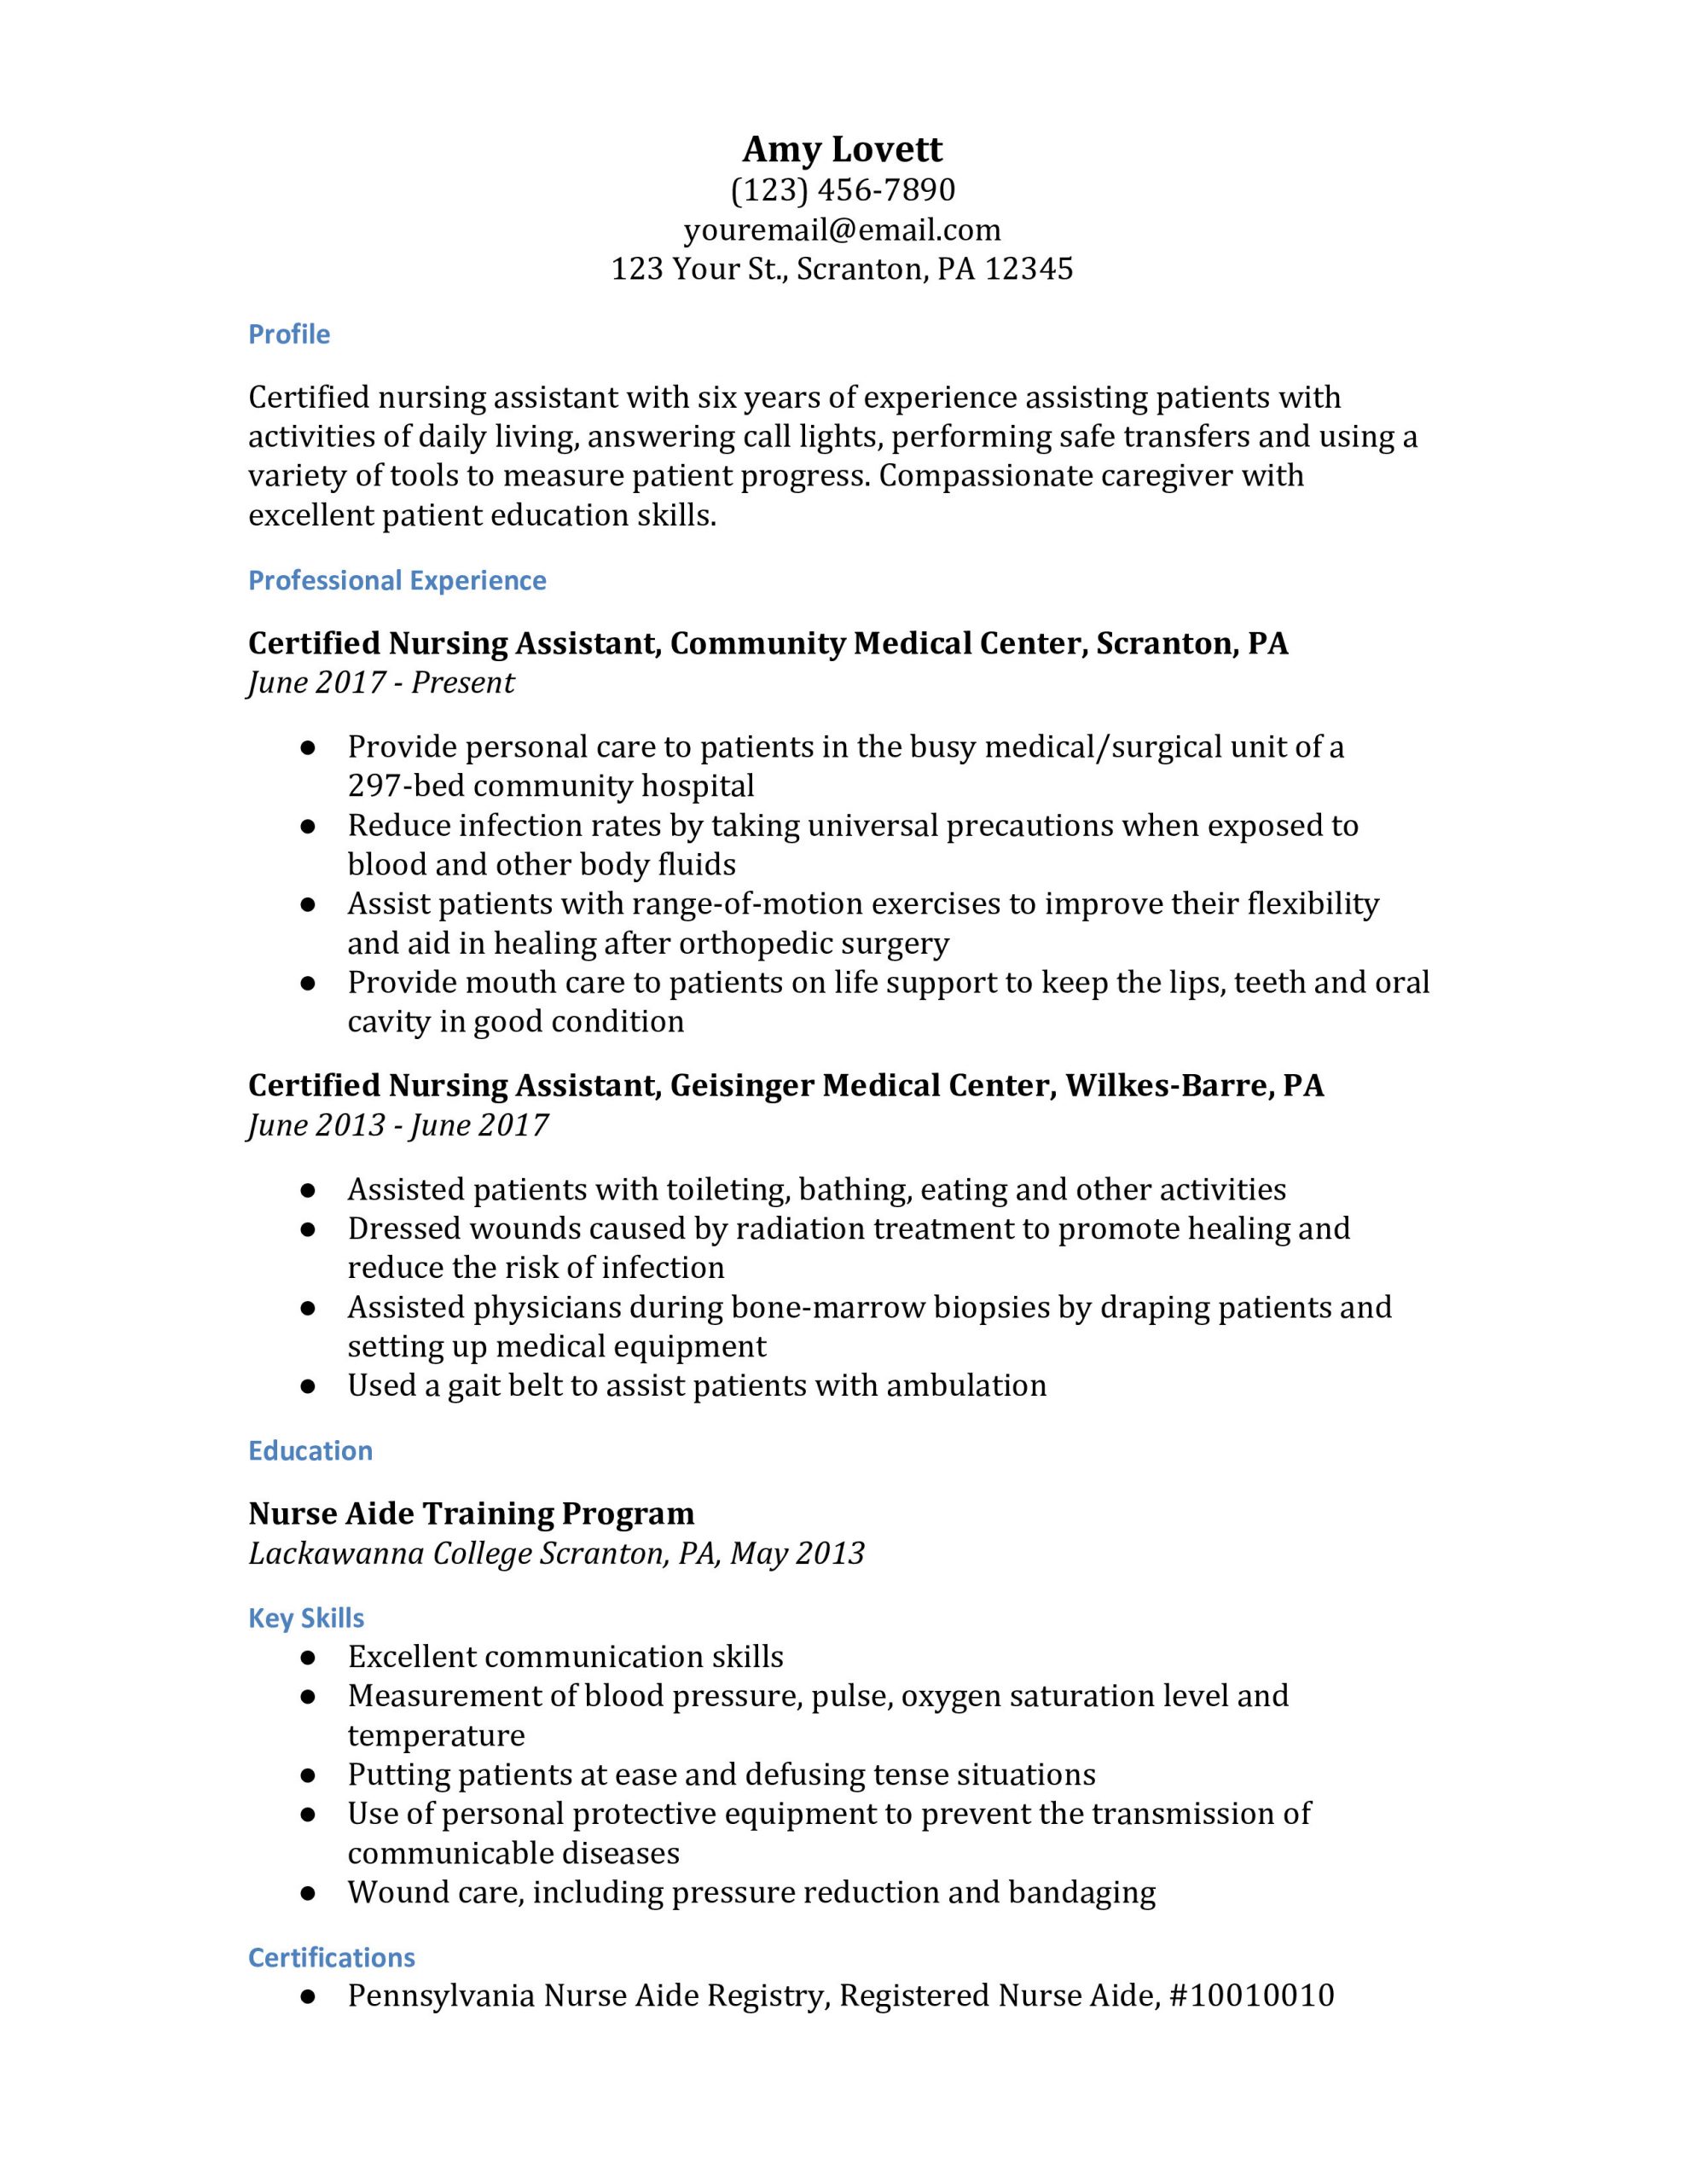 Certified Nursing assistant Resume Sample with Experience Certified Nursing assistant Resume Examples – Resumebuilder.com